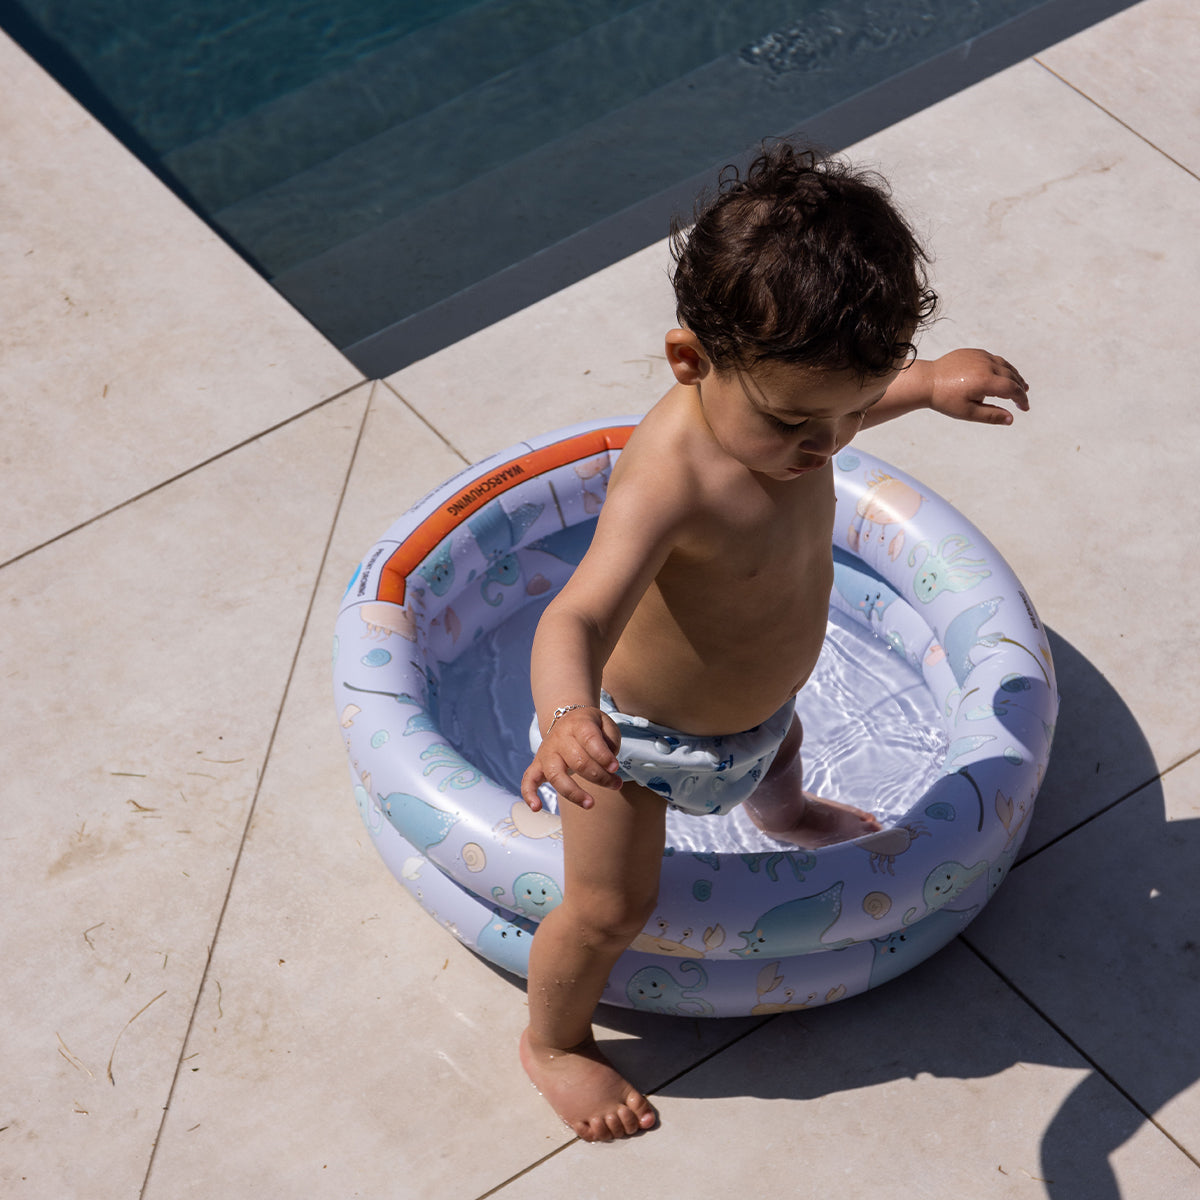 Het Swim Essentials zwembad 60 cm sea animals is het perfecte accessoire voor een warme dag. Dit leuke opblaasbare zwembadje zorgt voor lekker veel plezier en verkoeling. VanZus.